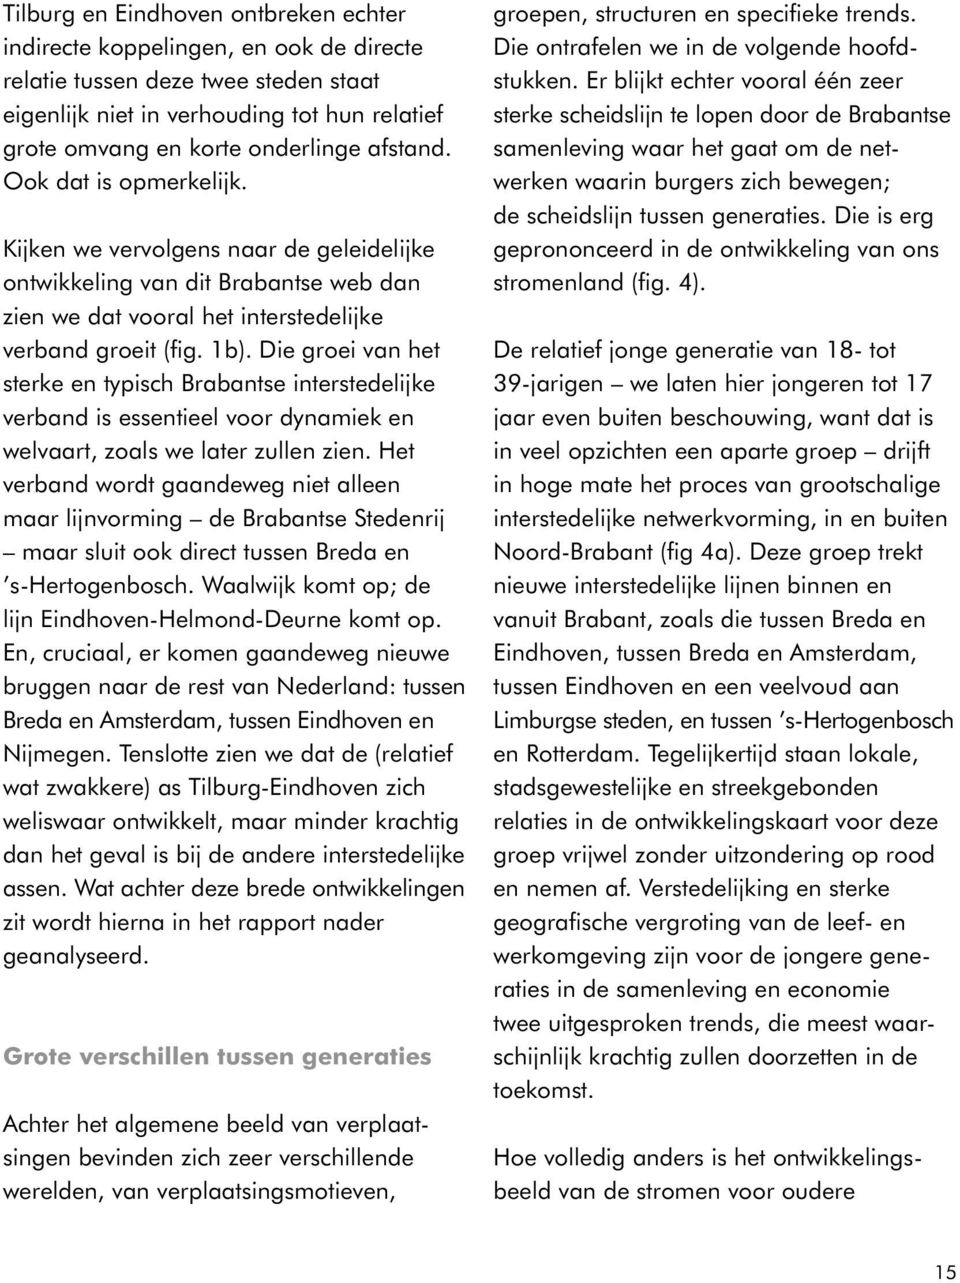 Die groei van het sterke en typisch Brabantse interstedelijke verband is essentieel voor dynamiek en welvaart, zoals we later zullen zien.